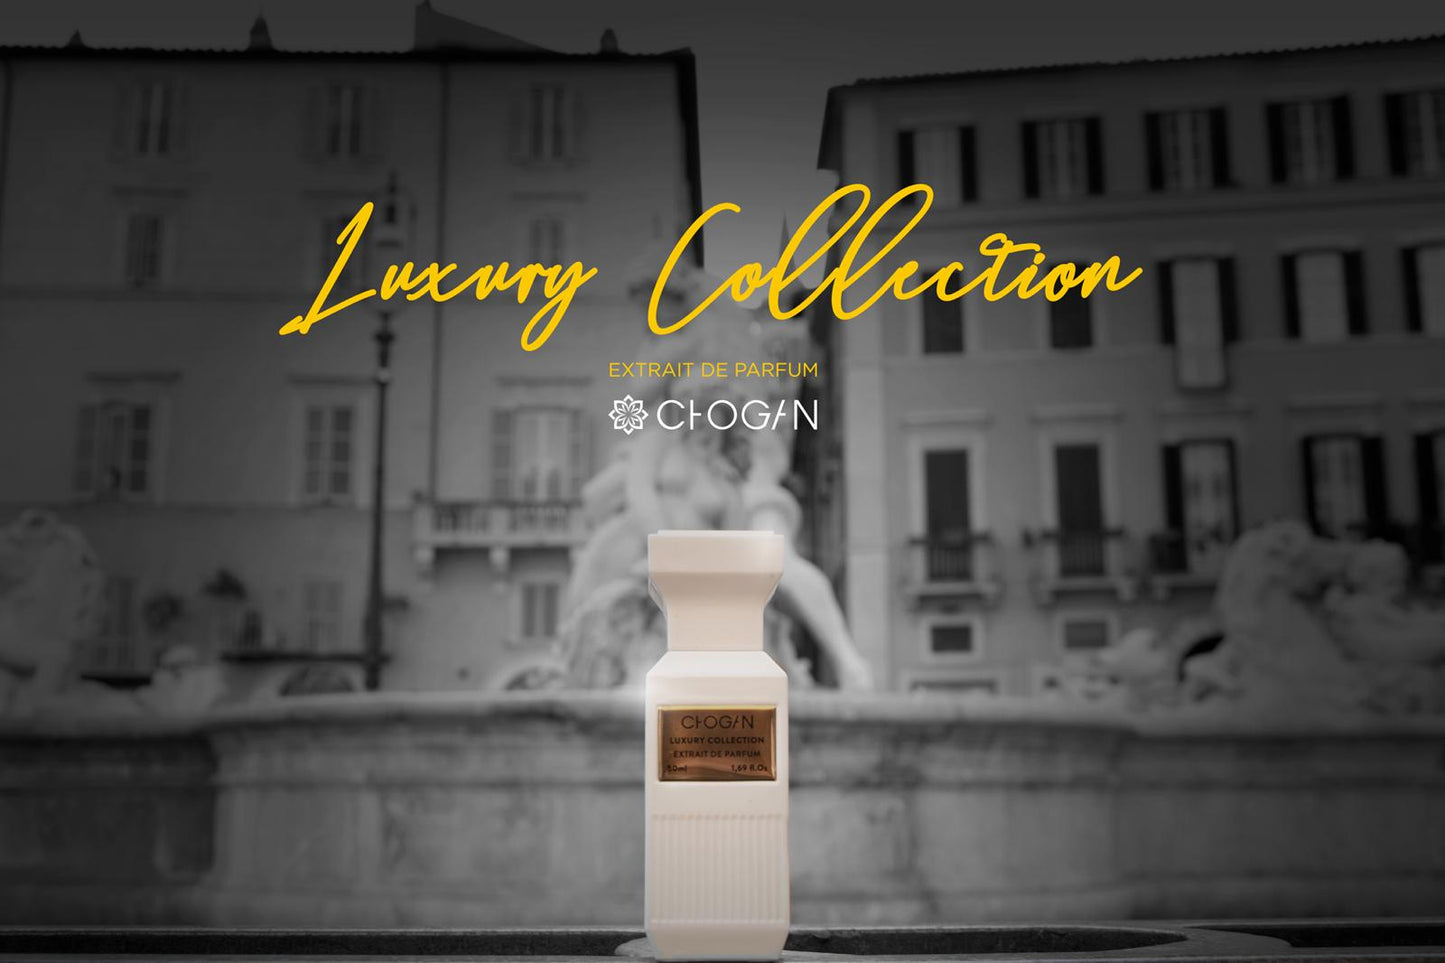 MILLESIME CHOGAN Extrait De Parfum Luxury Edition 139 - Ispirato a Les Sables Roses di Louis Vuitton